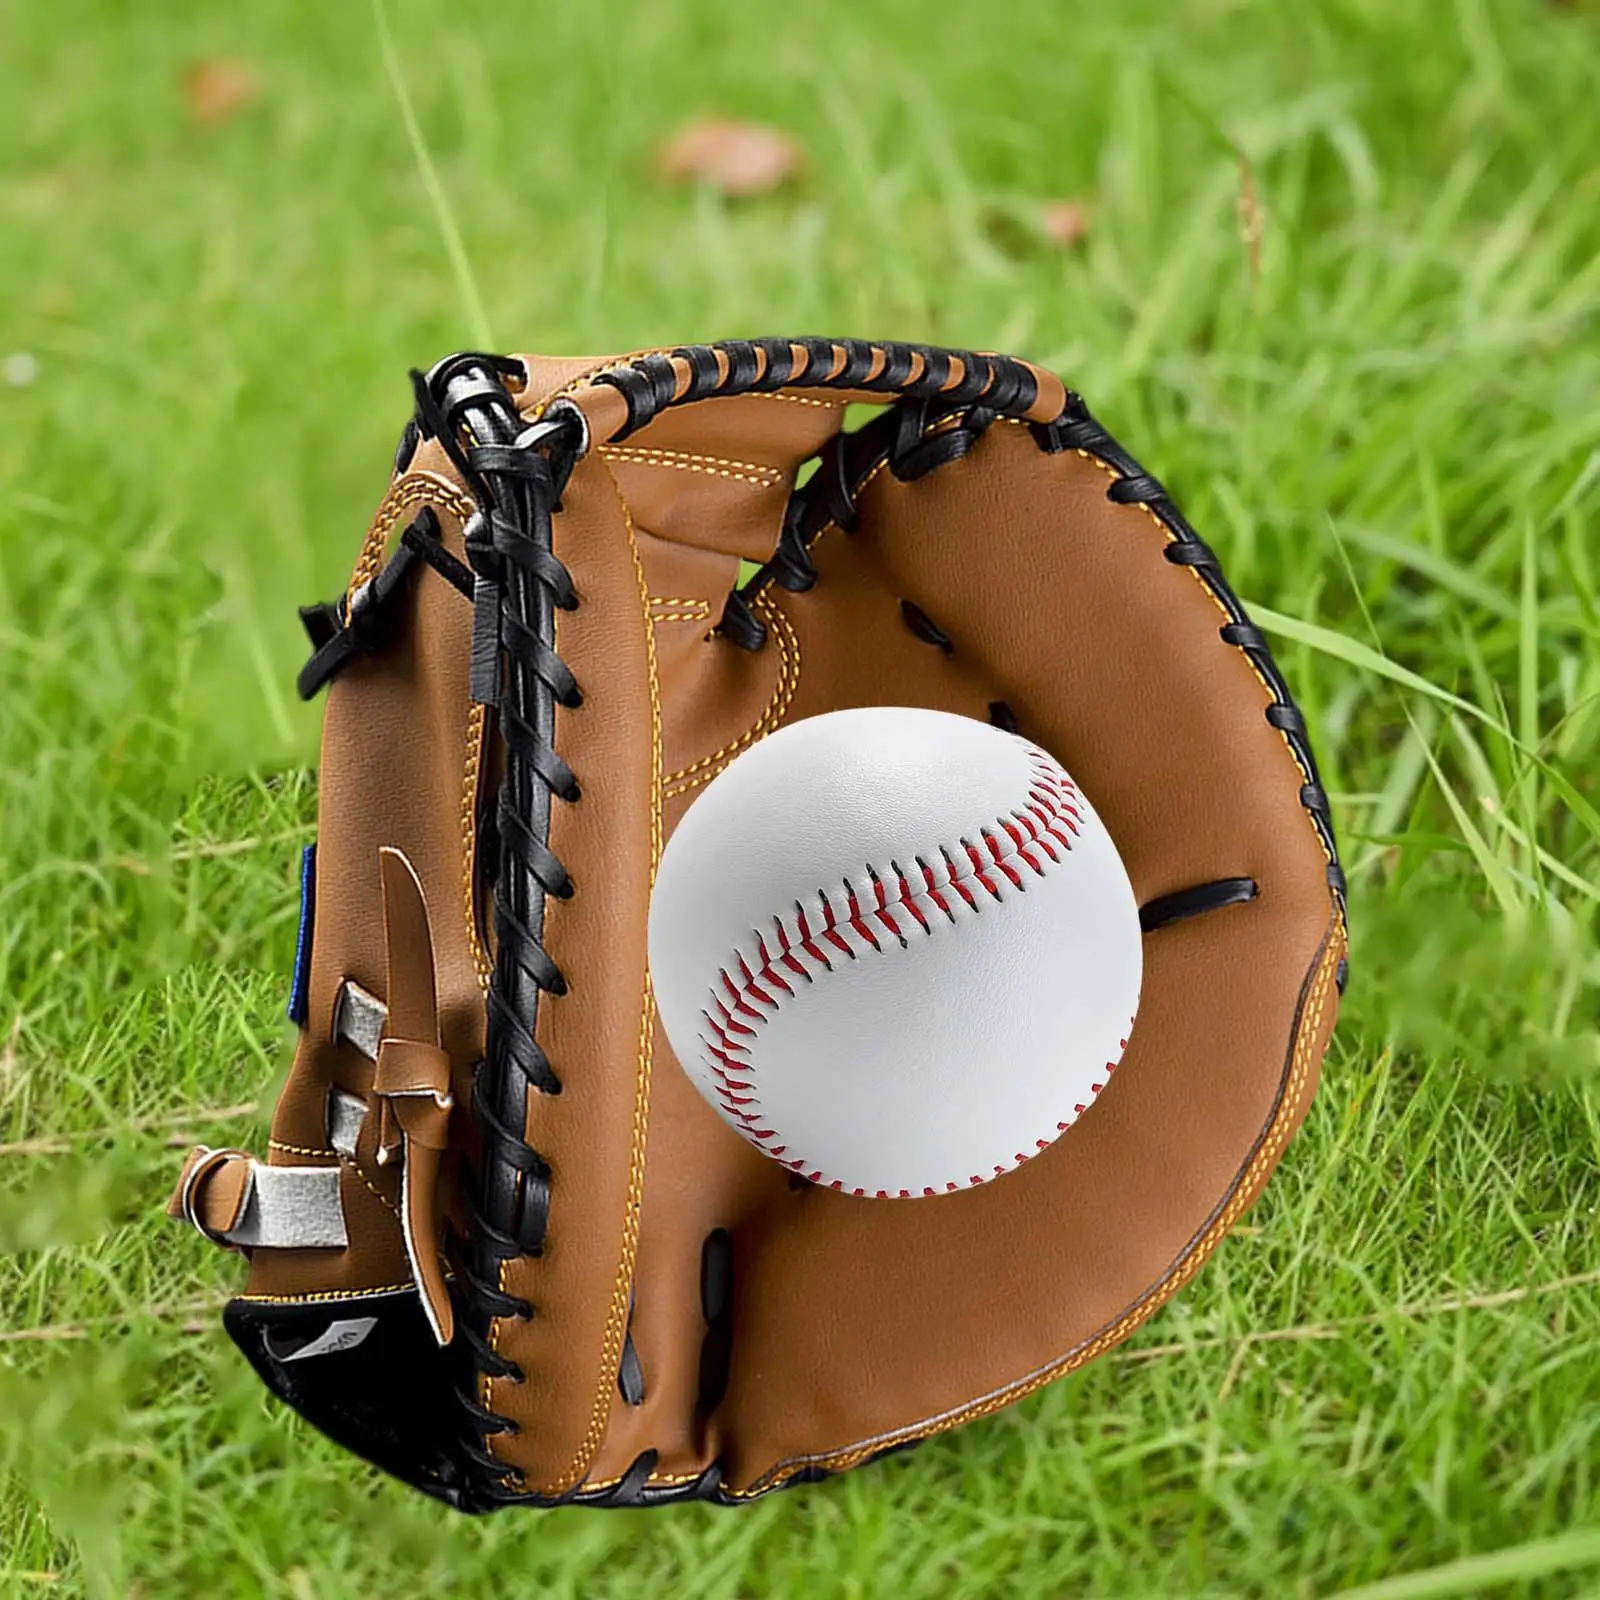 Baseball Glove for Adult, Softball Glove 12.5`` for Training and Beginner, Baseball Mitts Left Hand Glove